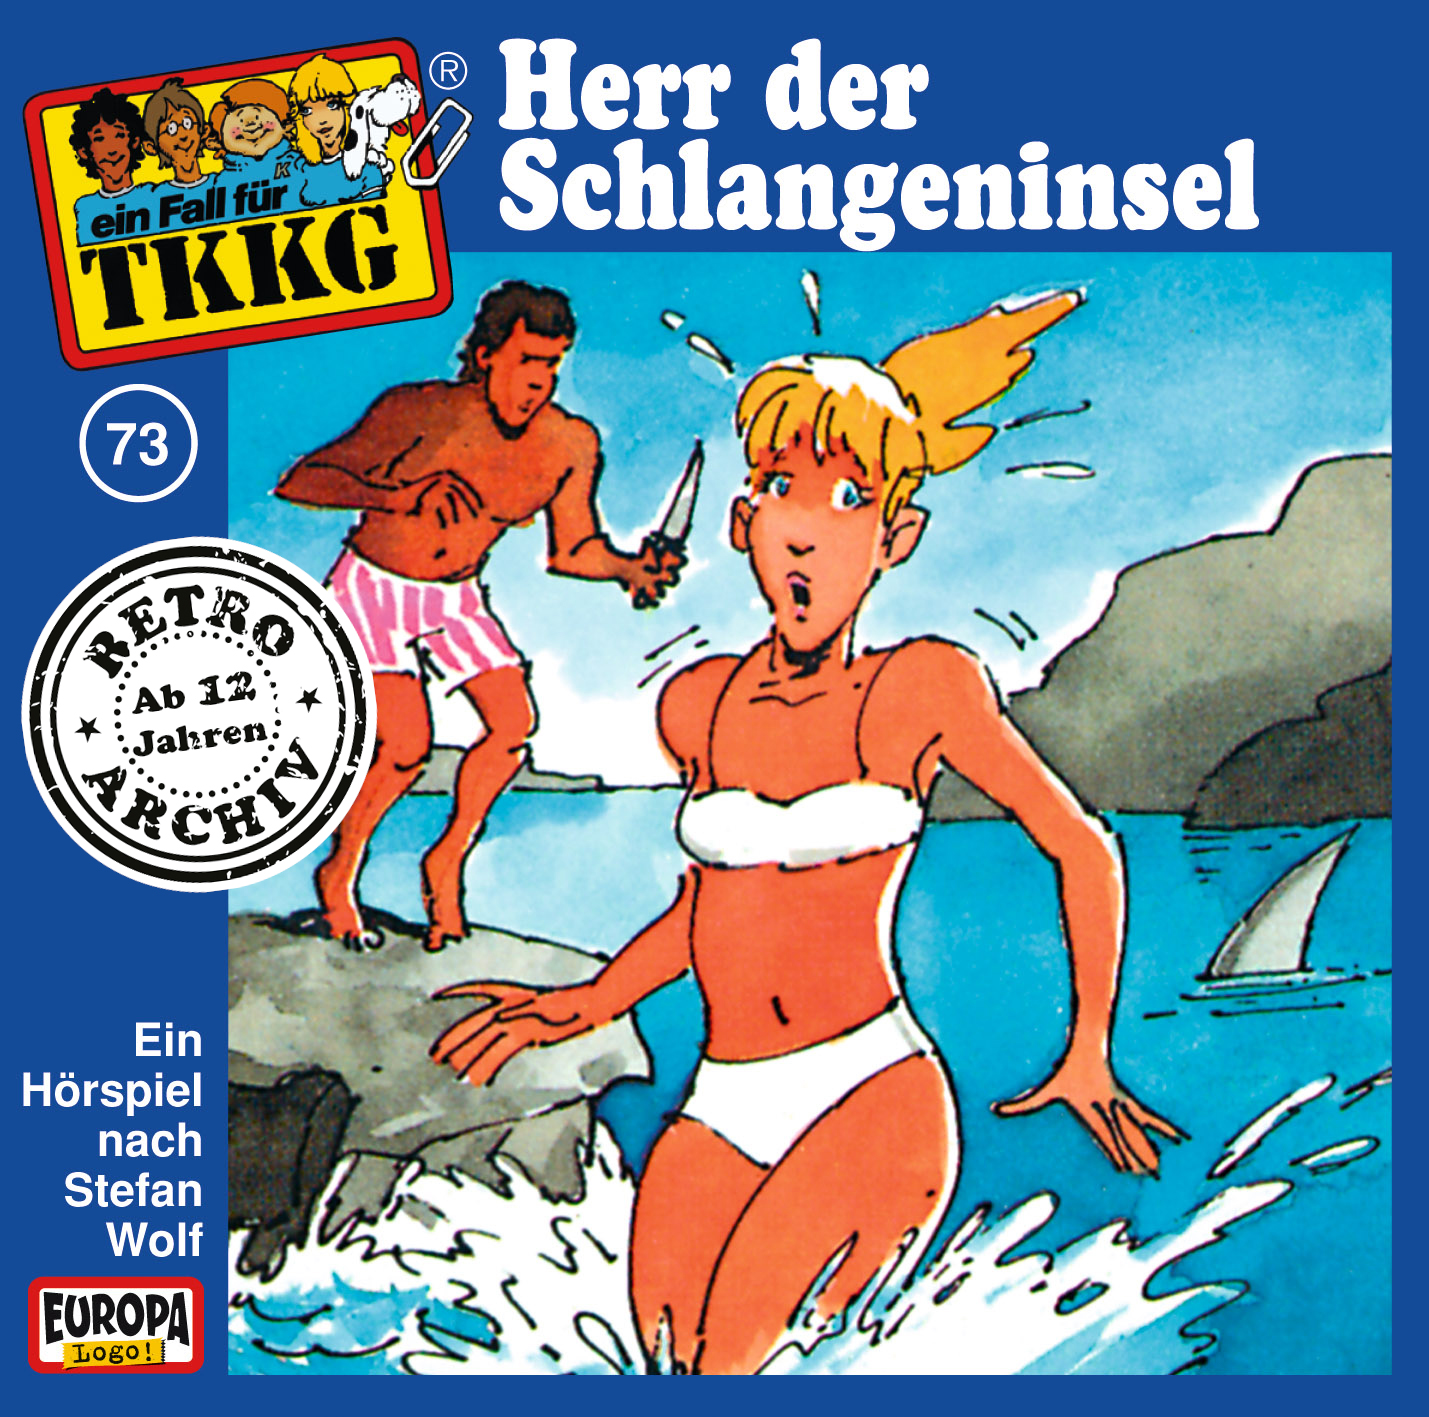 TKKG Retro-Archiv: Herr der Schlangeninsel